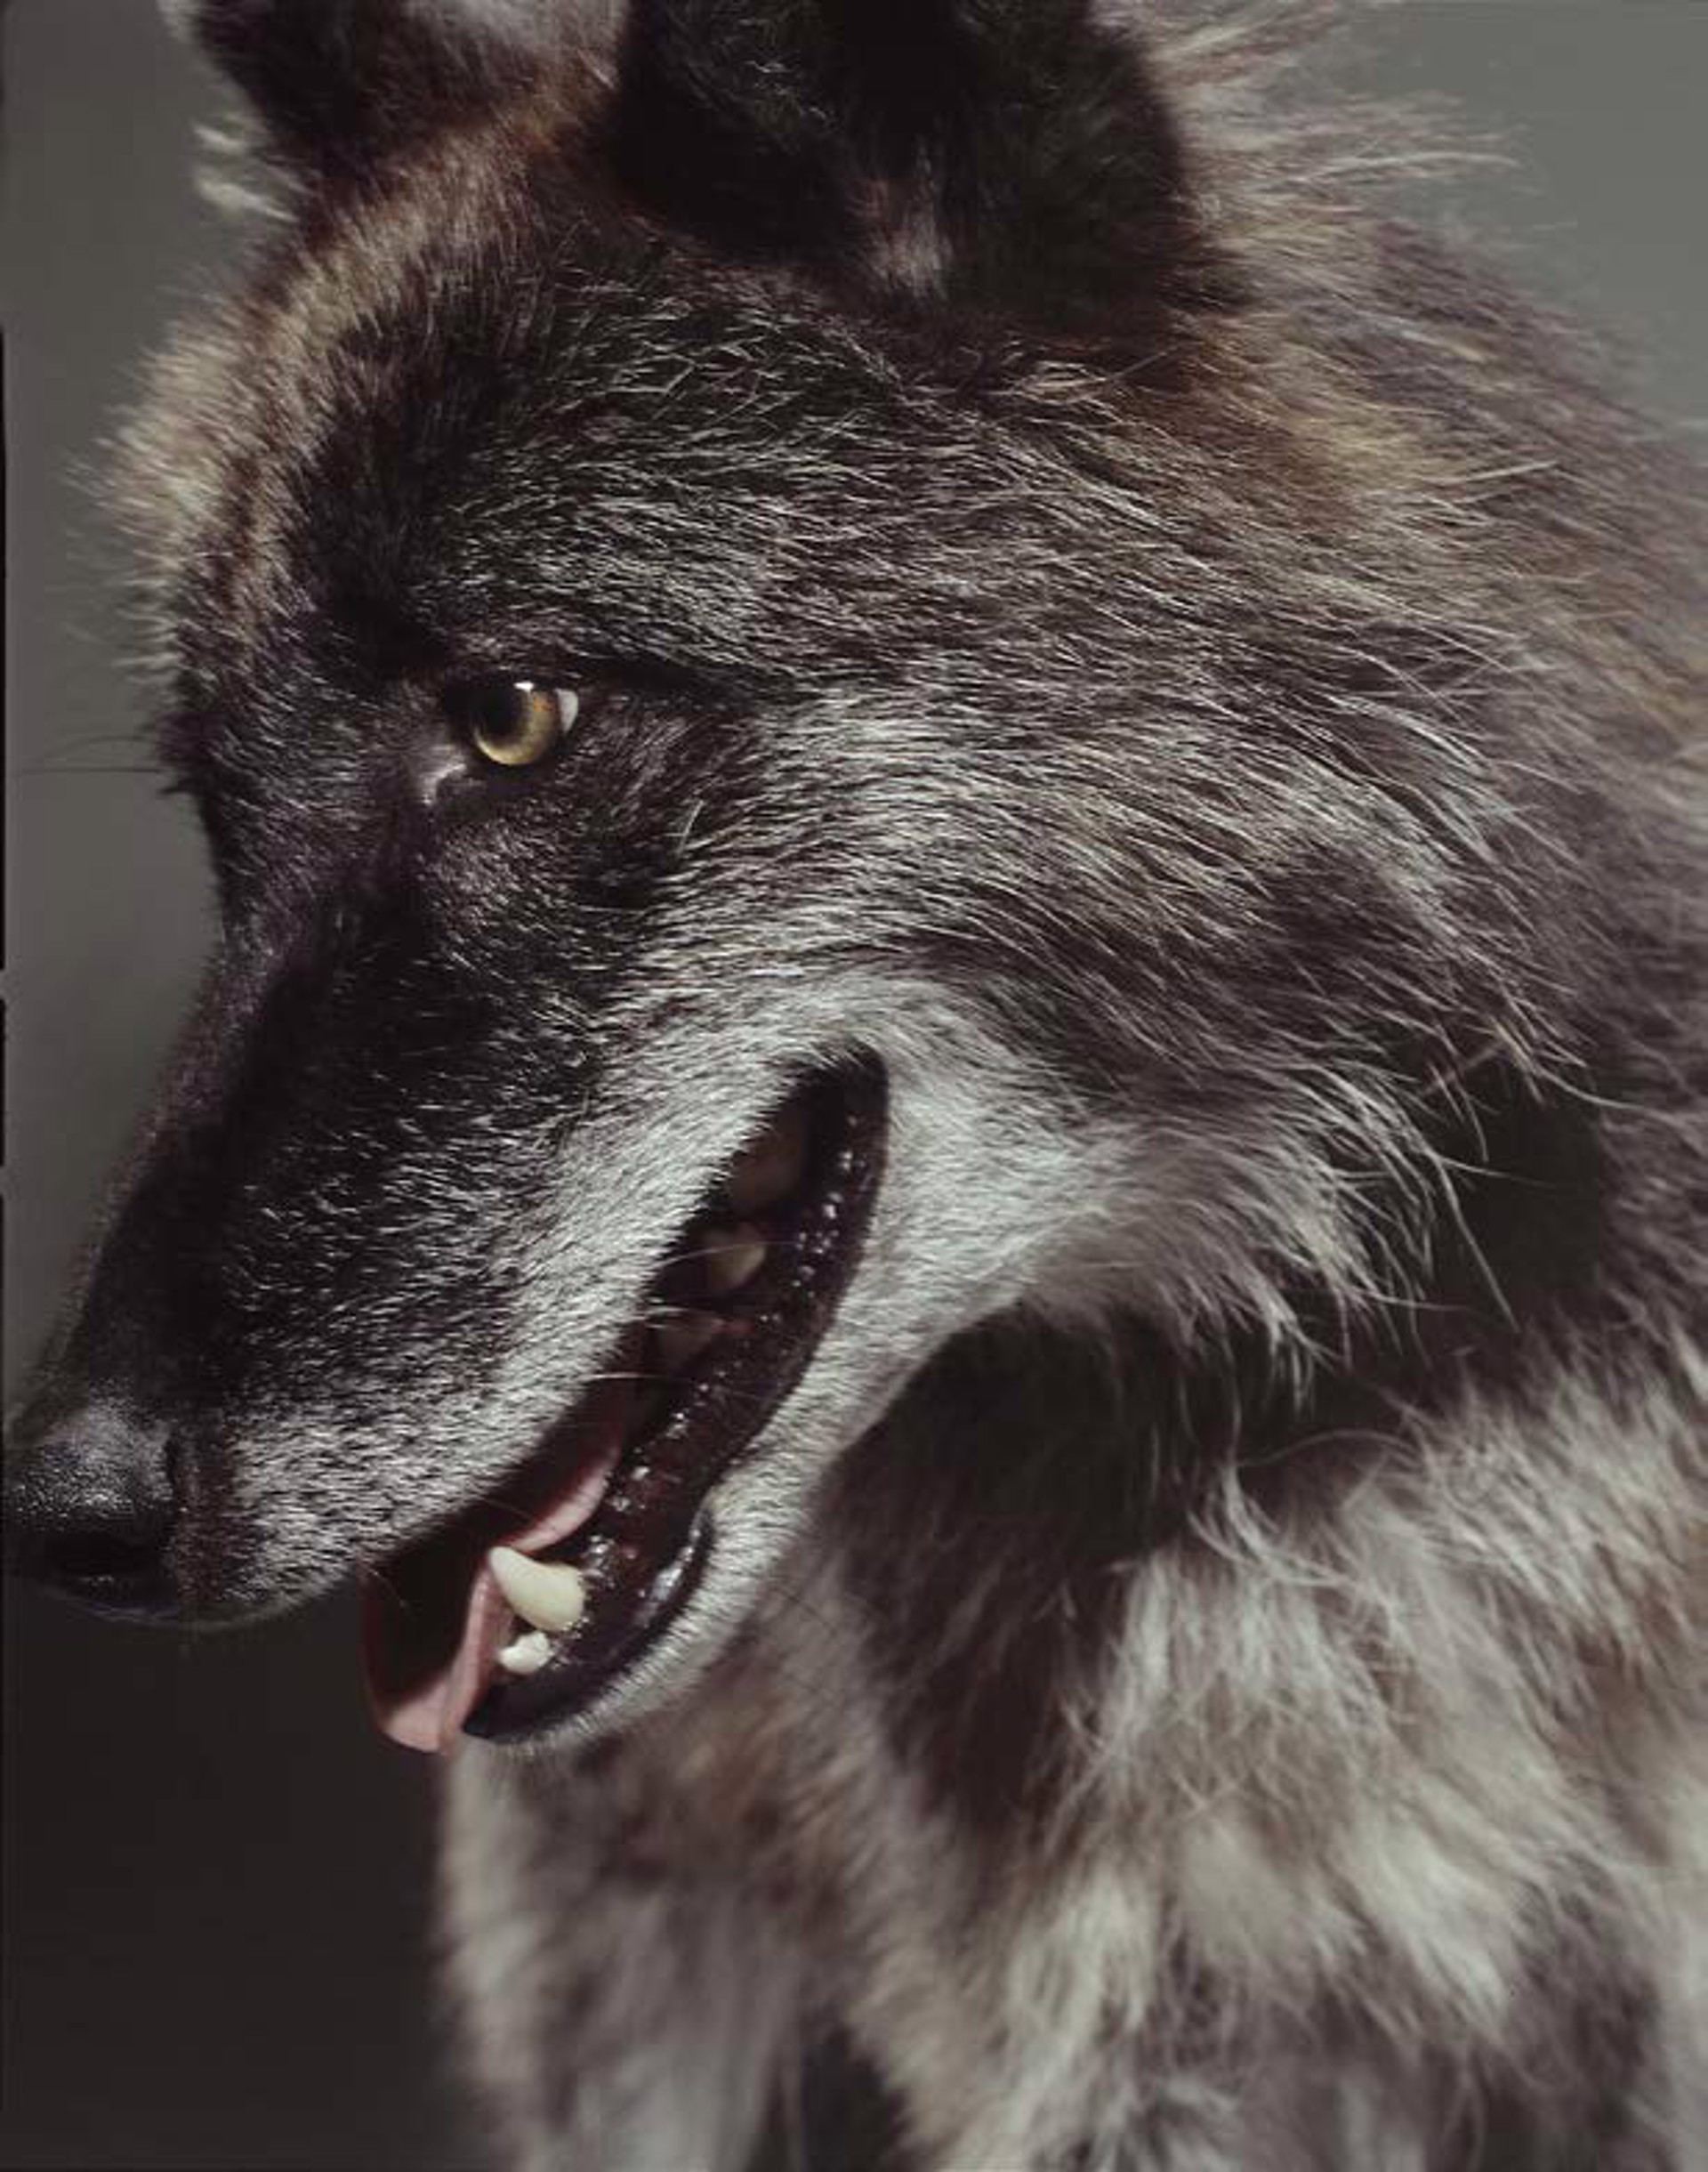 THE WOLF by Markus Klinko